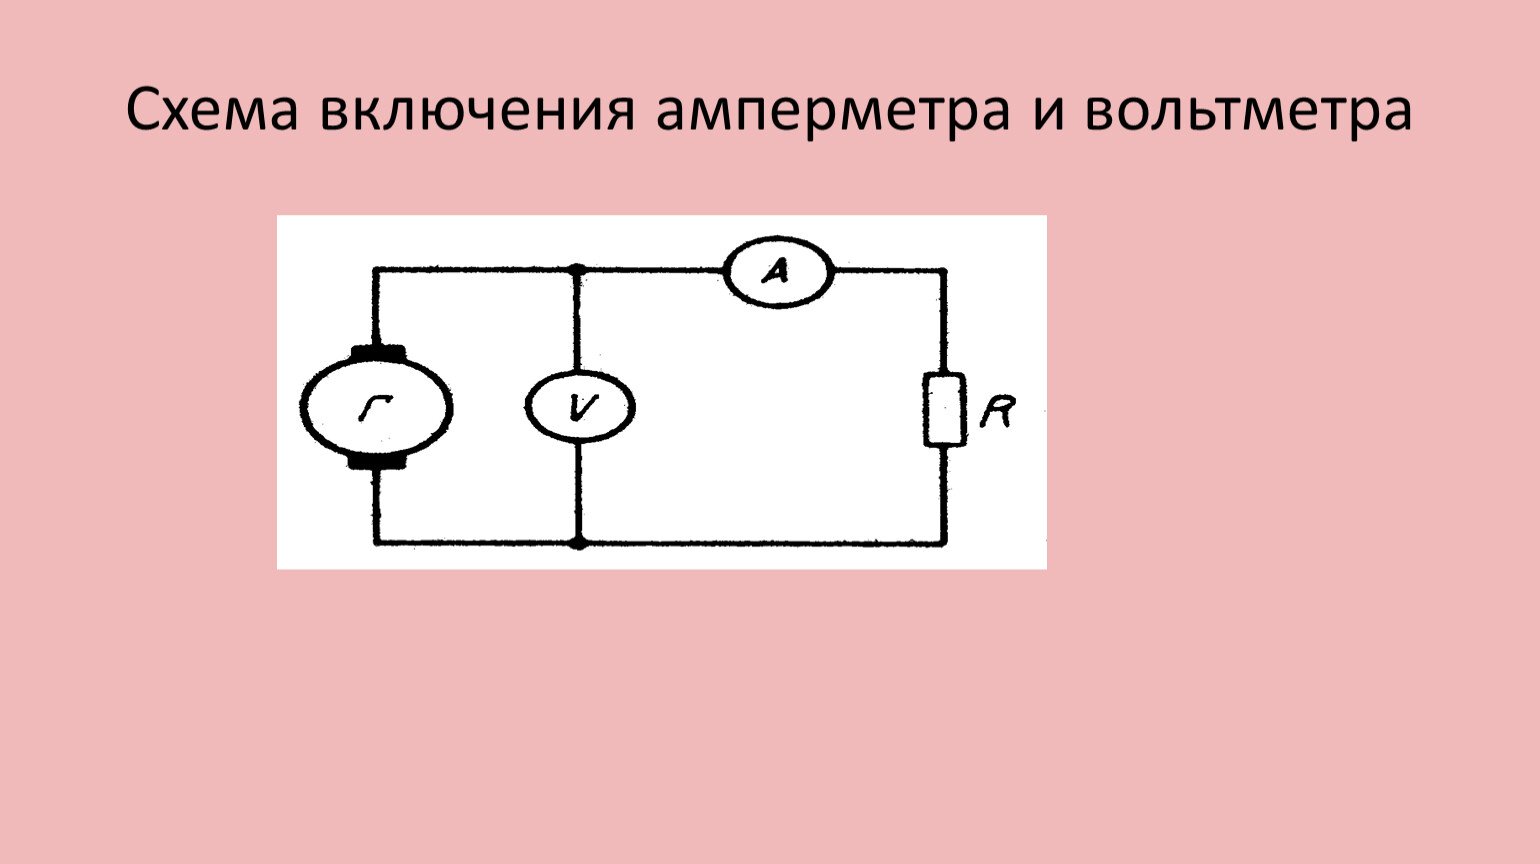 Схема включения амперметра. Параллельное включение амперметра. Включатель амперметра с 2 лампами в чертеже. Прибор измерительный физика схема. Соединение амперметра